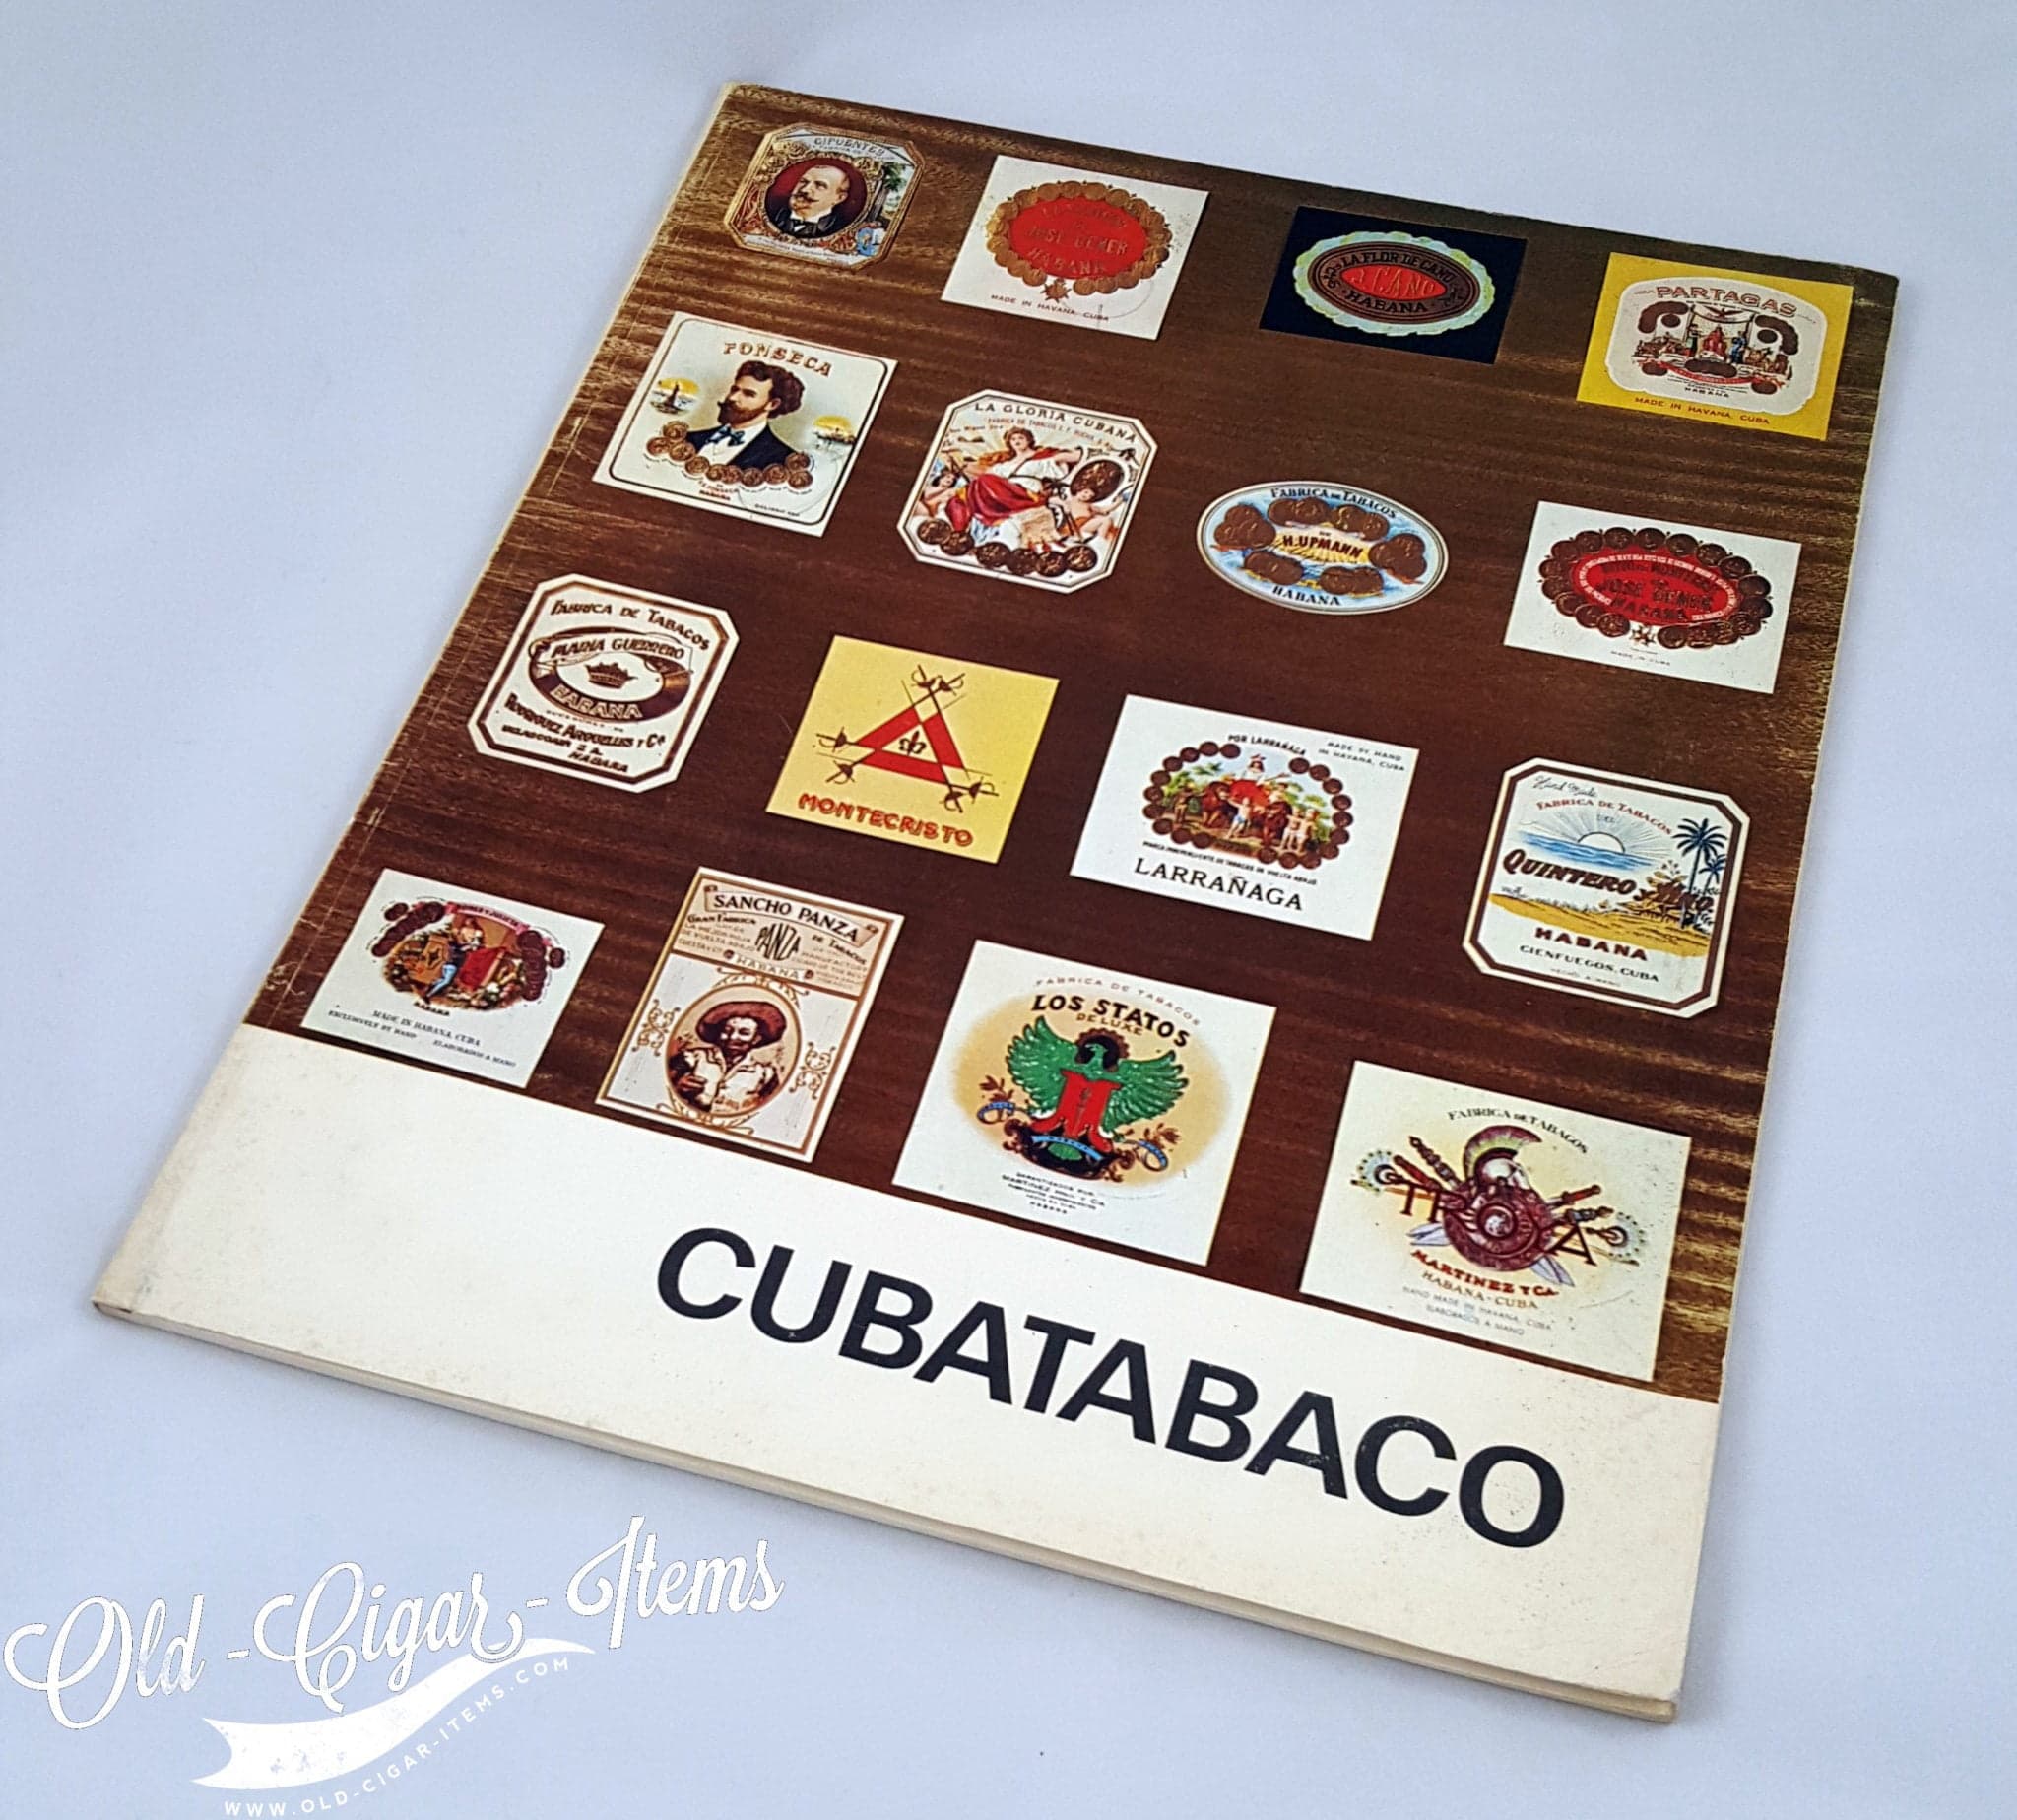 CATALOGUE-CUBATABACO-1971